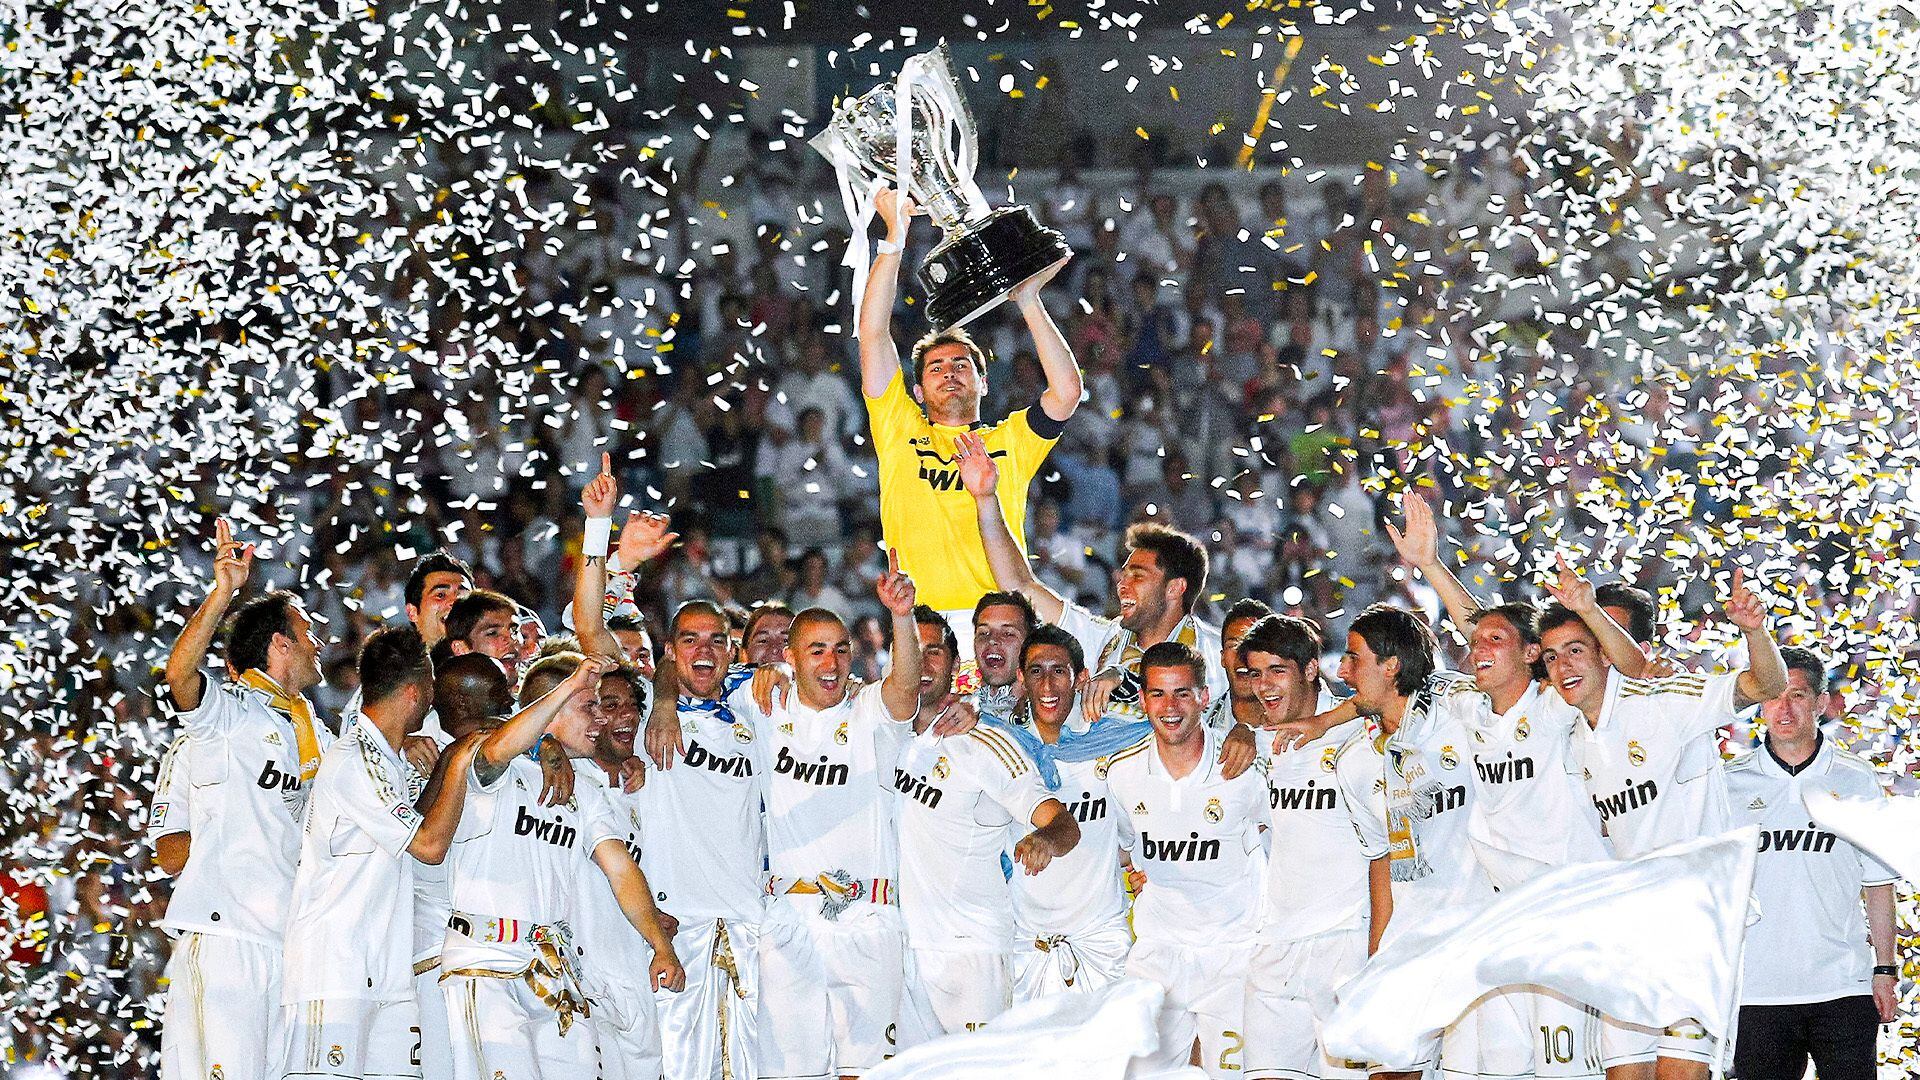 El Real Madrid celebra su 32ª liga, que consiguieron el 2 de mayo de 2012 (Real Madrid)